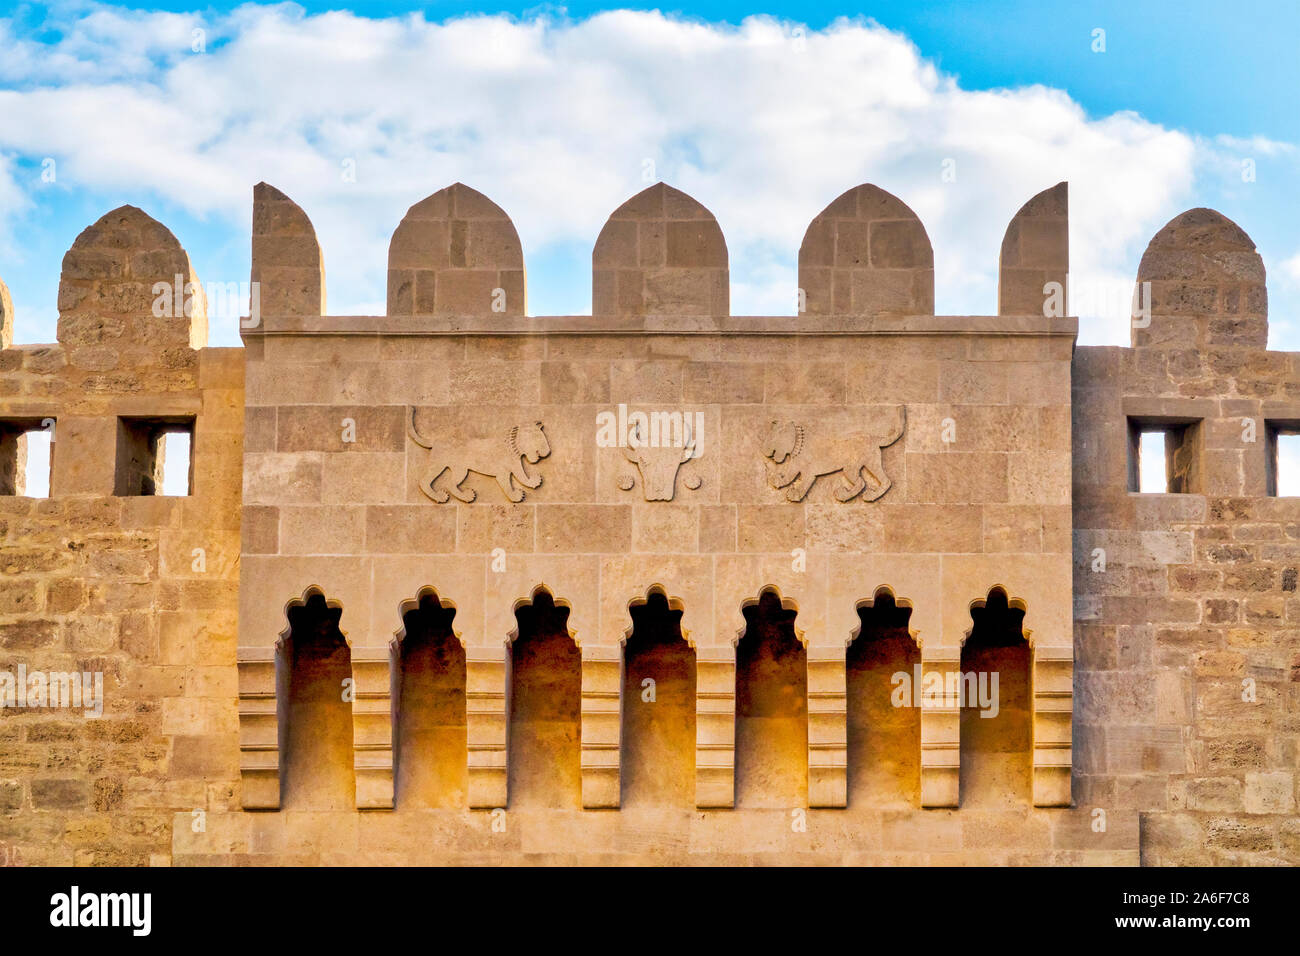 Les armoiries de la ville de Bakou, deux lions gardant un taureau gravés sur les murs de l'Icheri Sheher, Bakou, Azerbaïdjan Banque D'Images